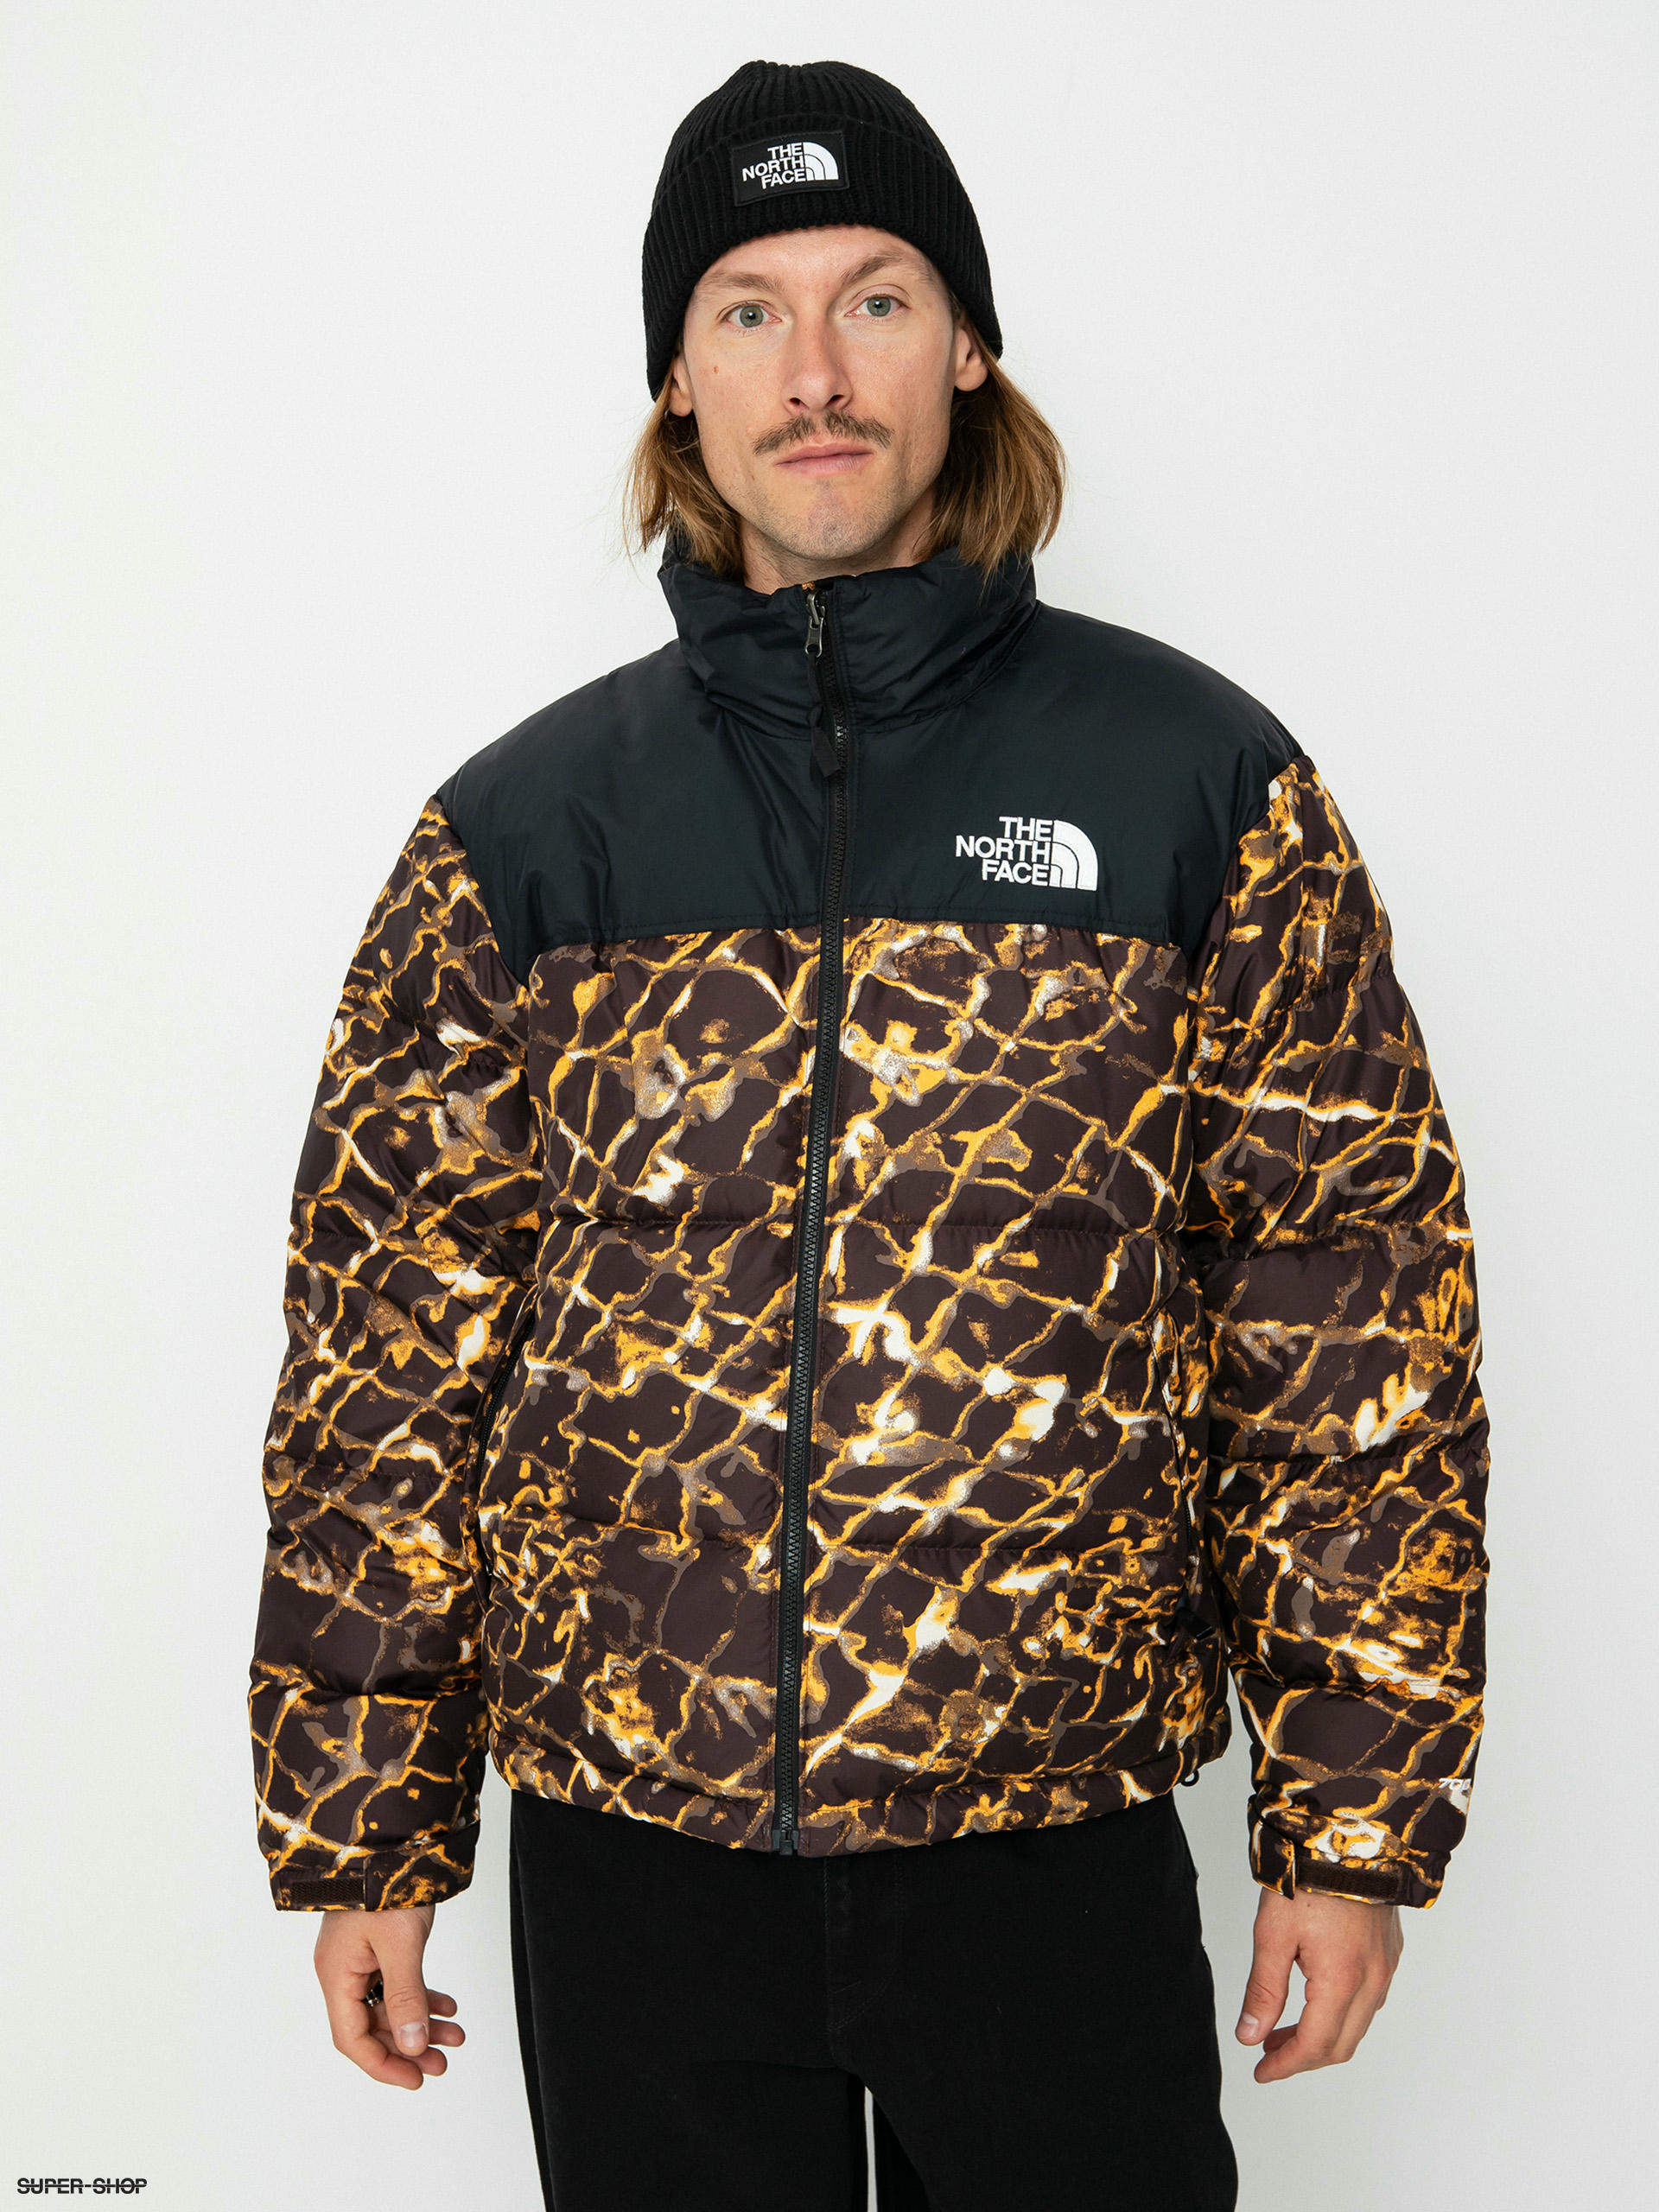 The North Face 1996 Retro Nuptse Jacket (coal brown wtrdstp/tnfb)